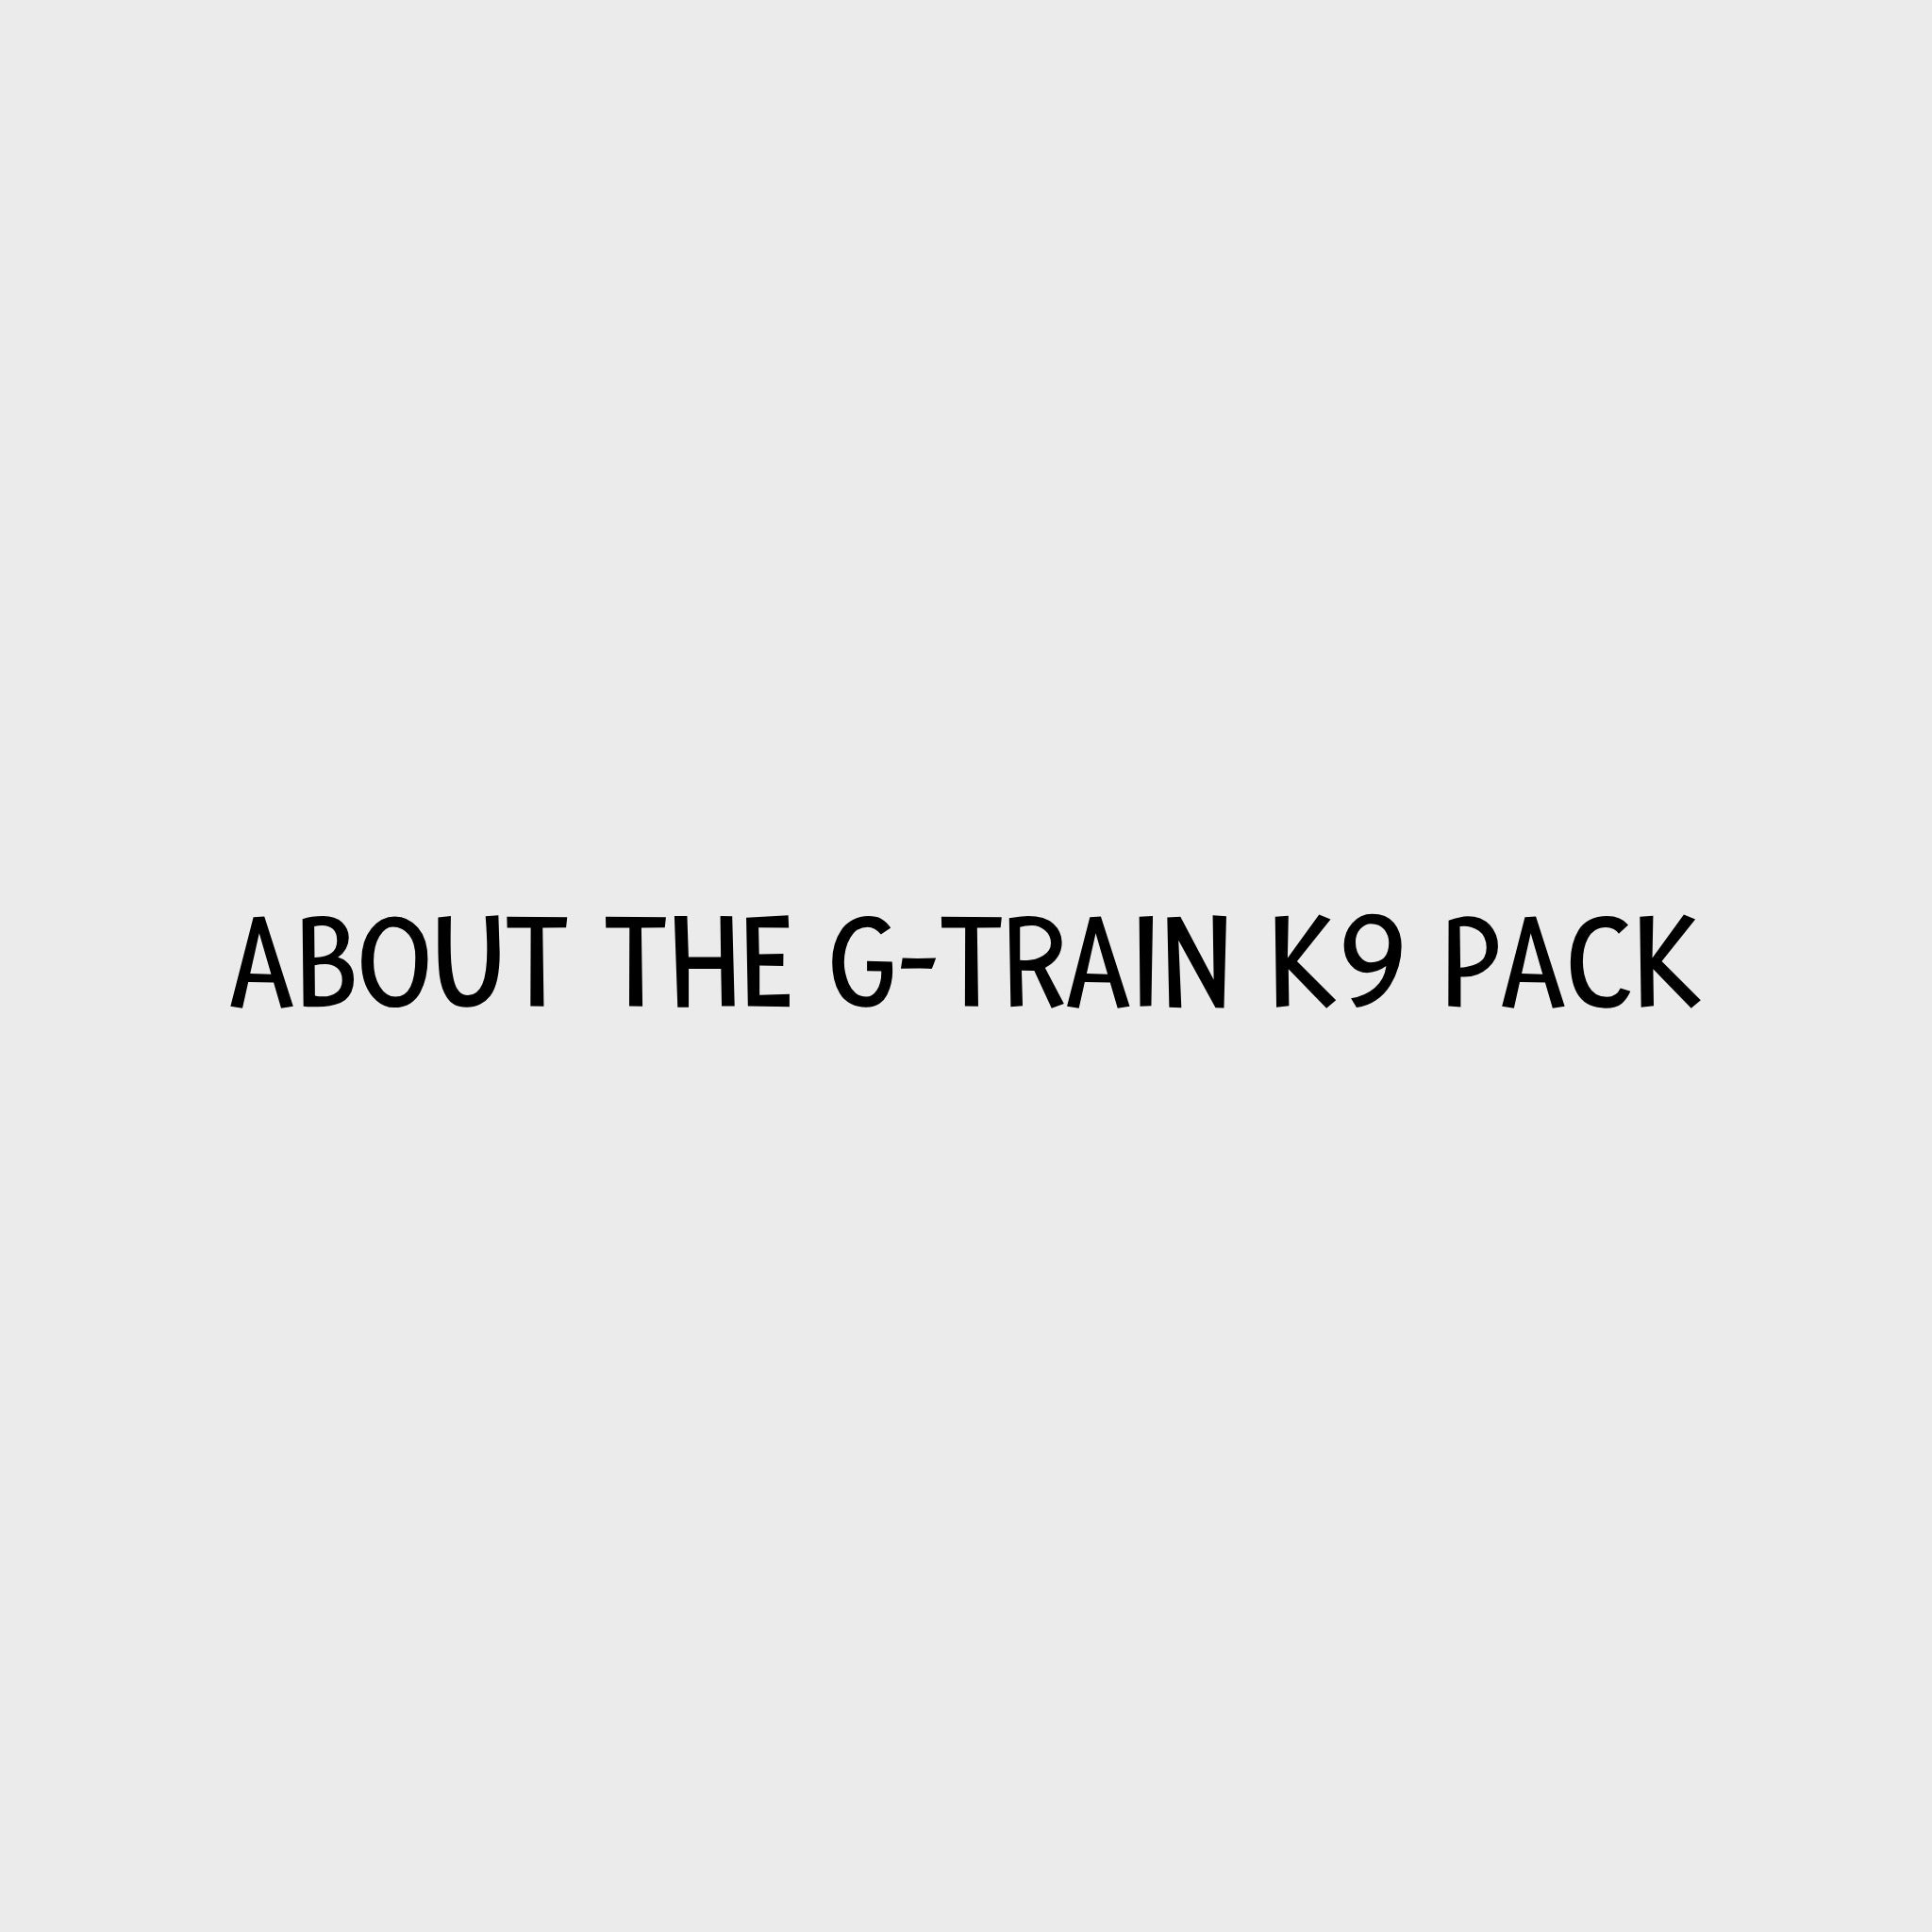 Video - Kurgo G-Train K9 Pack